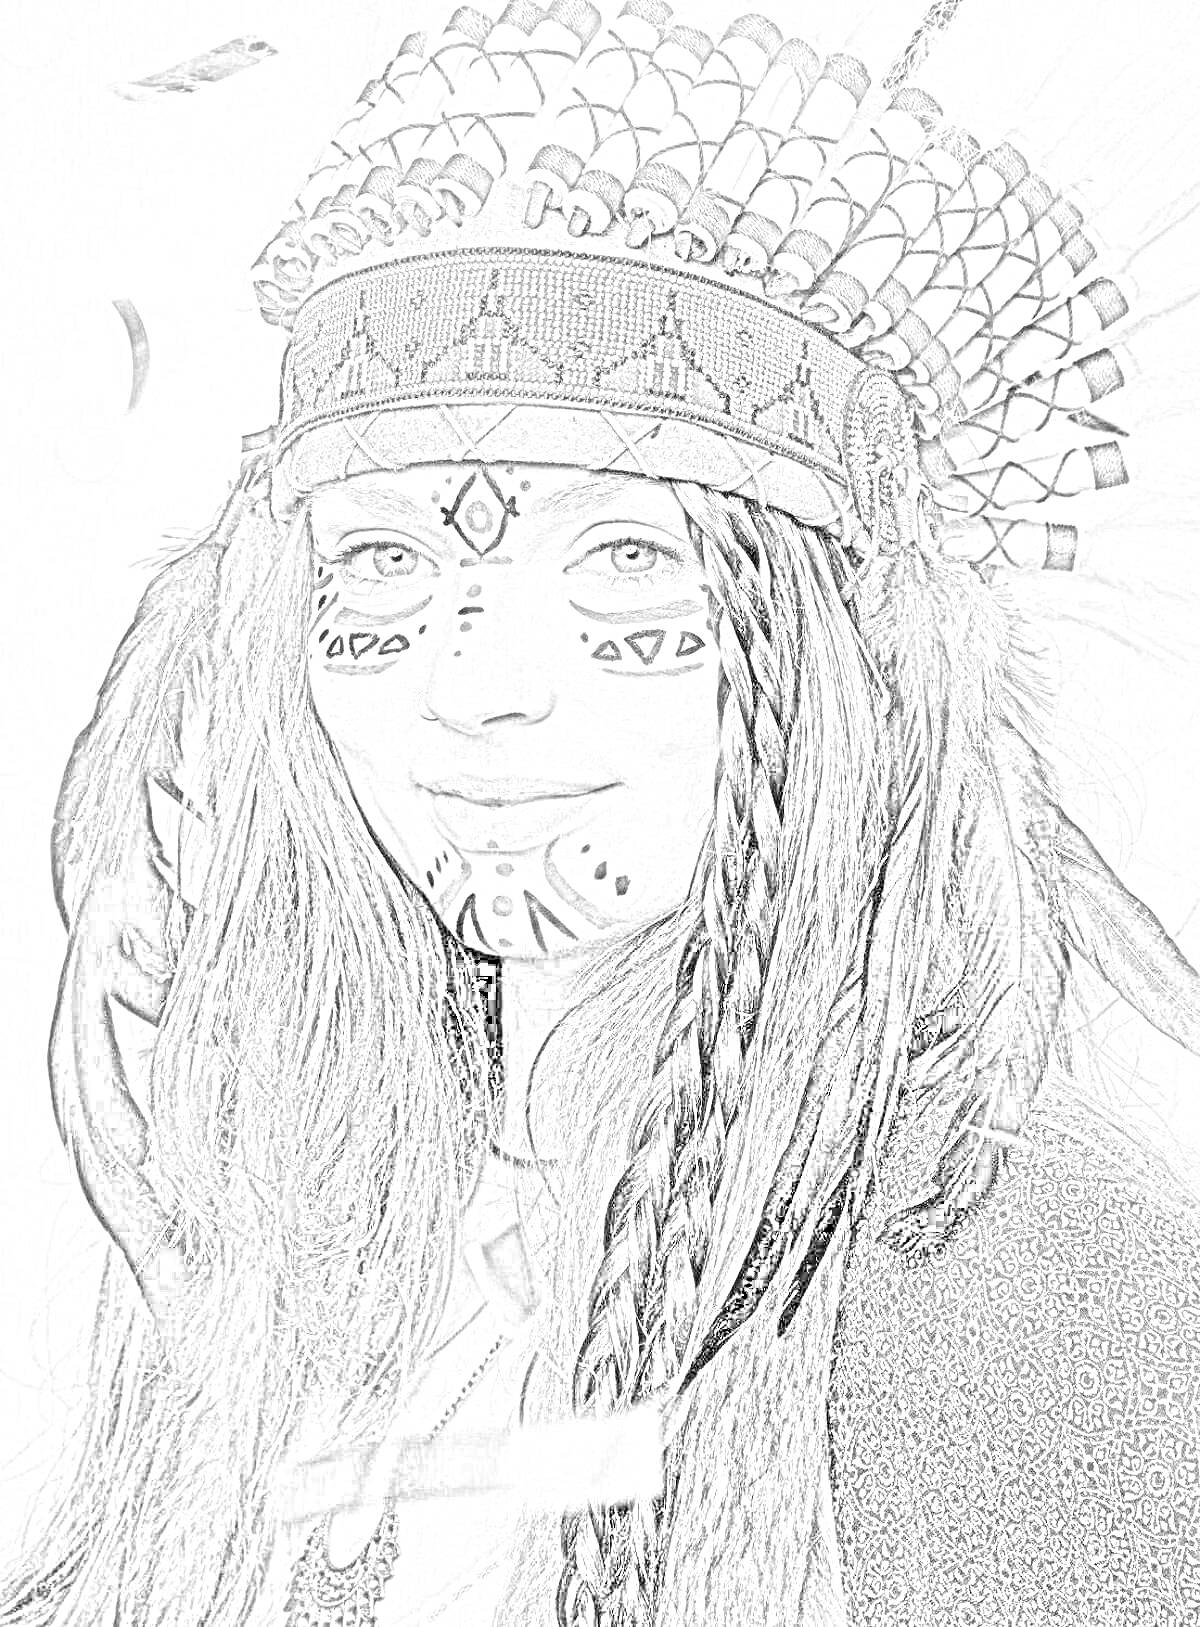 Раскраска девушка в головном уборе индейца с раскрашенным лицом и косами, украшенными перьями и лентами